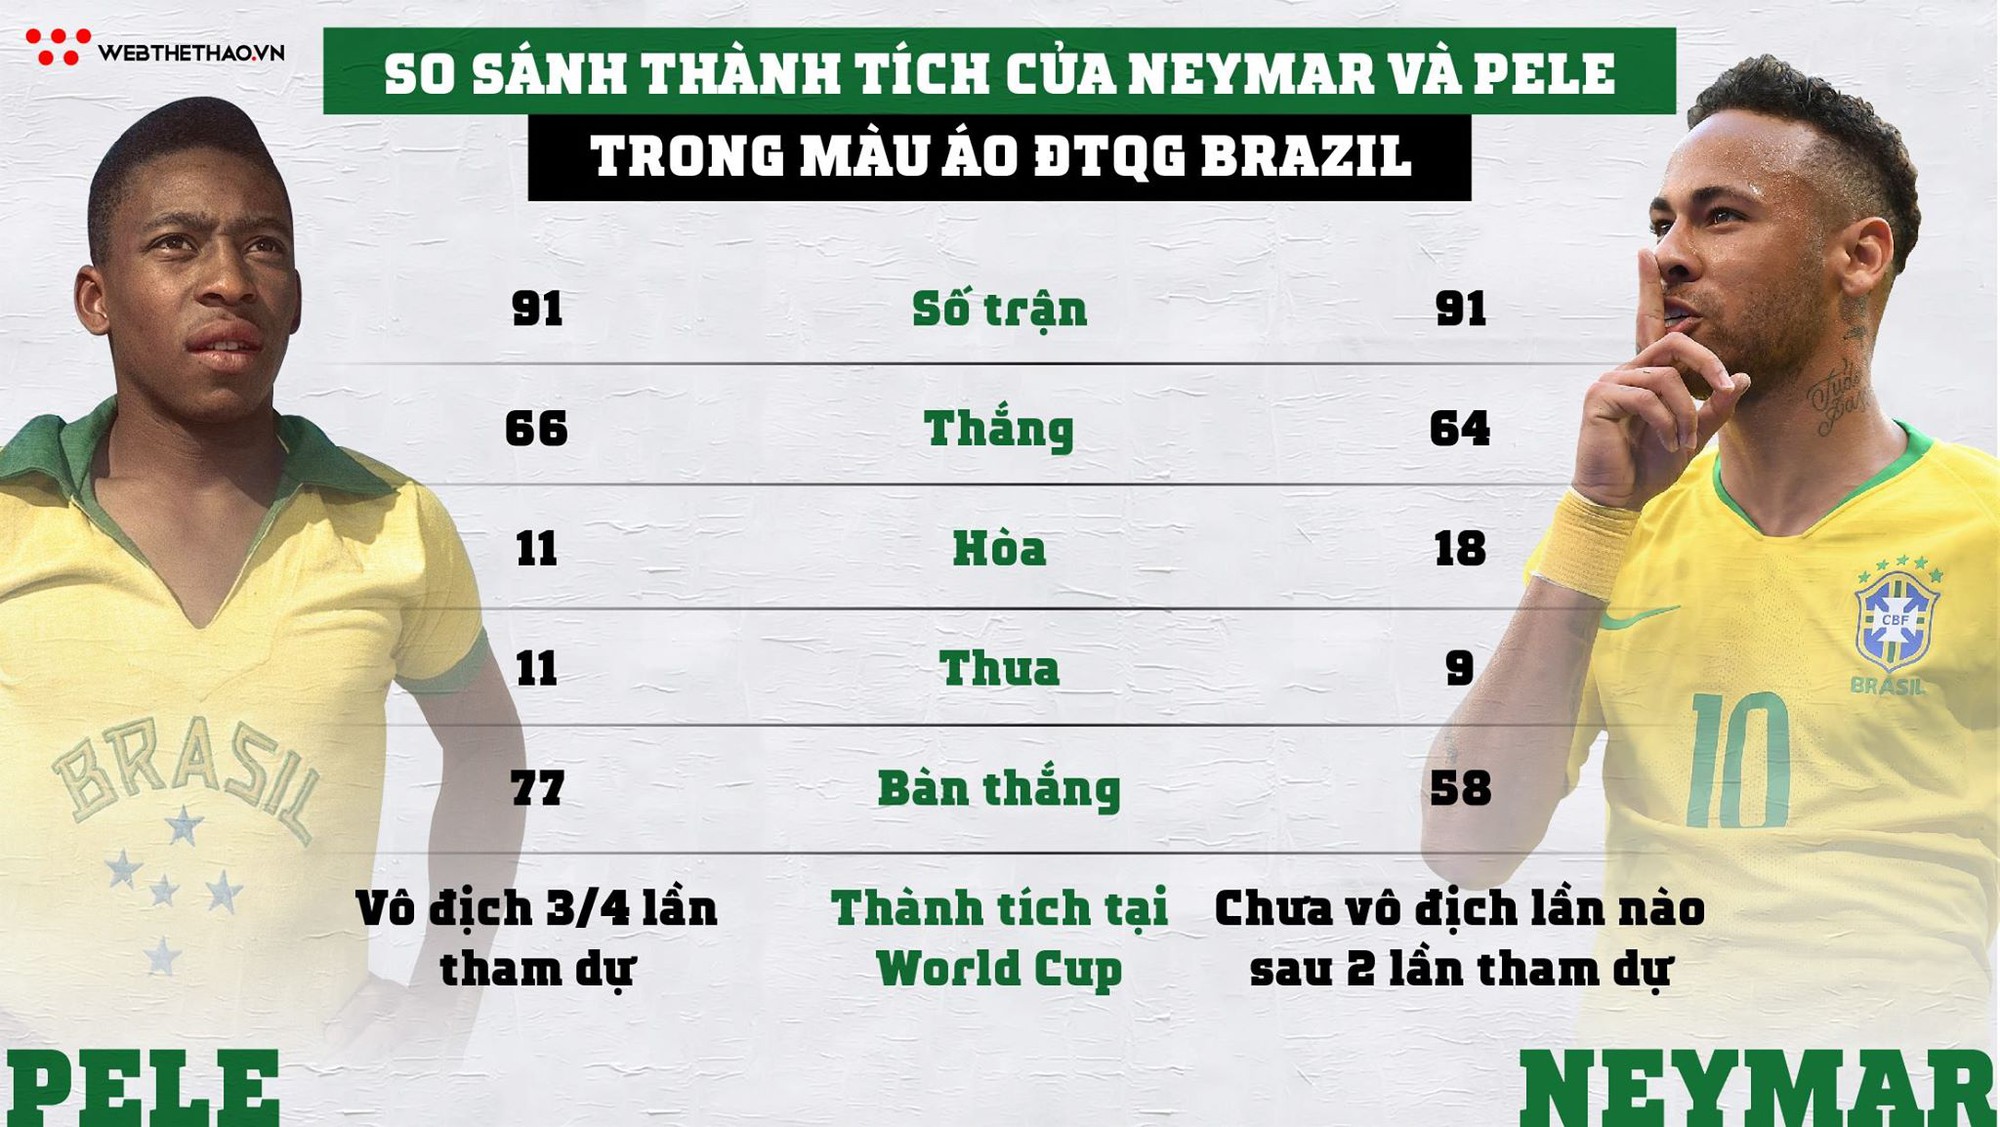 Ở tuổi 26 Neymar đã thấy cơ hội phá các kỷ lục của vua bóng đá Pele trong màu áo Selecao - Ảnh 5.